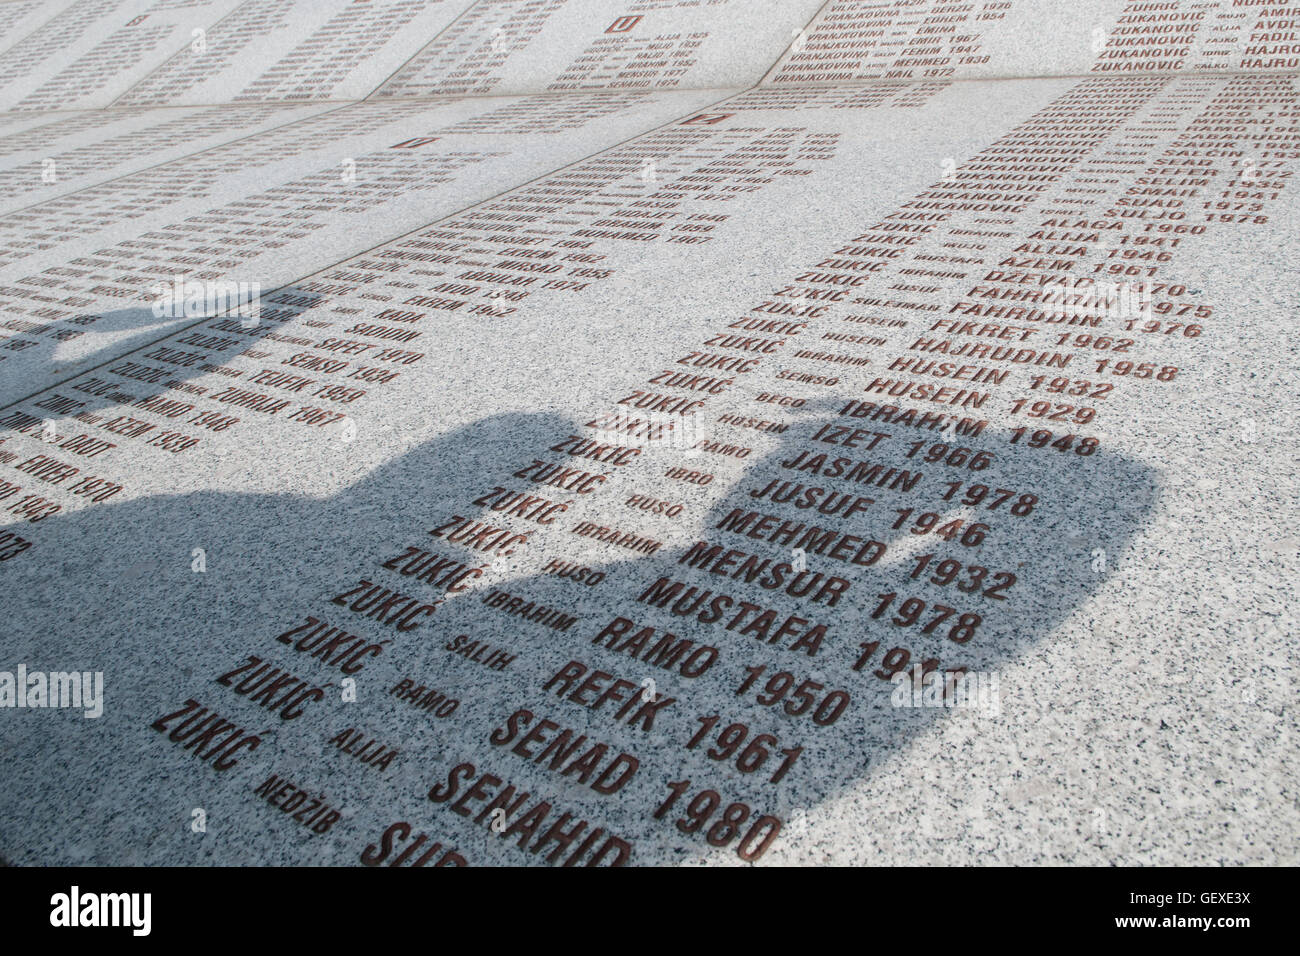 Die Menschen werfen Schatten über die Wand der Opfernamen auf dem Srebrenica Potocari Genozid-Denkmal und Friedhof für die Opfer des 1995 Genozids im östlichsten Teil der Republika Srpska, einer Einheit von Bosnien und Herzegowina. Mehr als 8,000 bosnisch-muslimische Männer und Jungen wurden getötet, nachdem die serbische Armee am 10-11. Juli 1995 trotz der Anwesenheit von UN-Friedenstruppen Srebrenica, ein ausgewiesenes UN-Sicherheitsgebiet, angegriffen hatte. Stockfoto